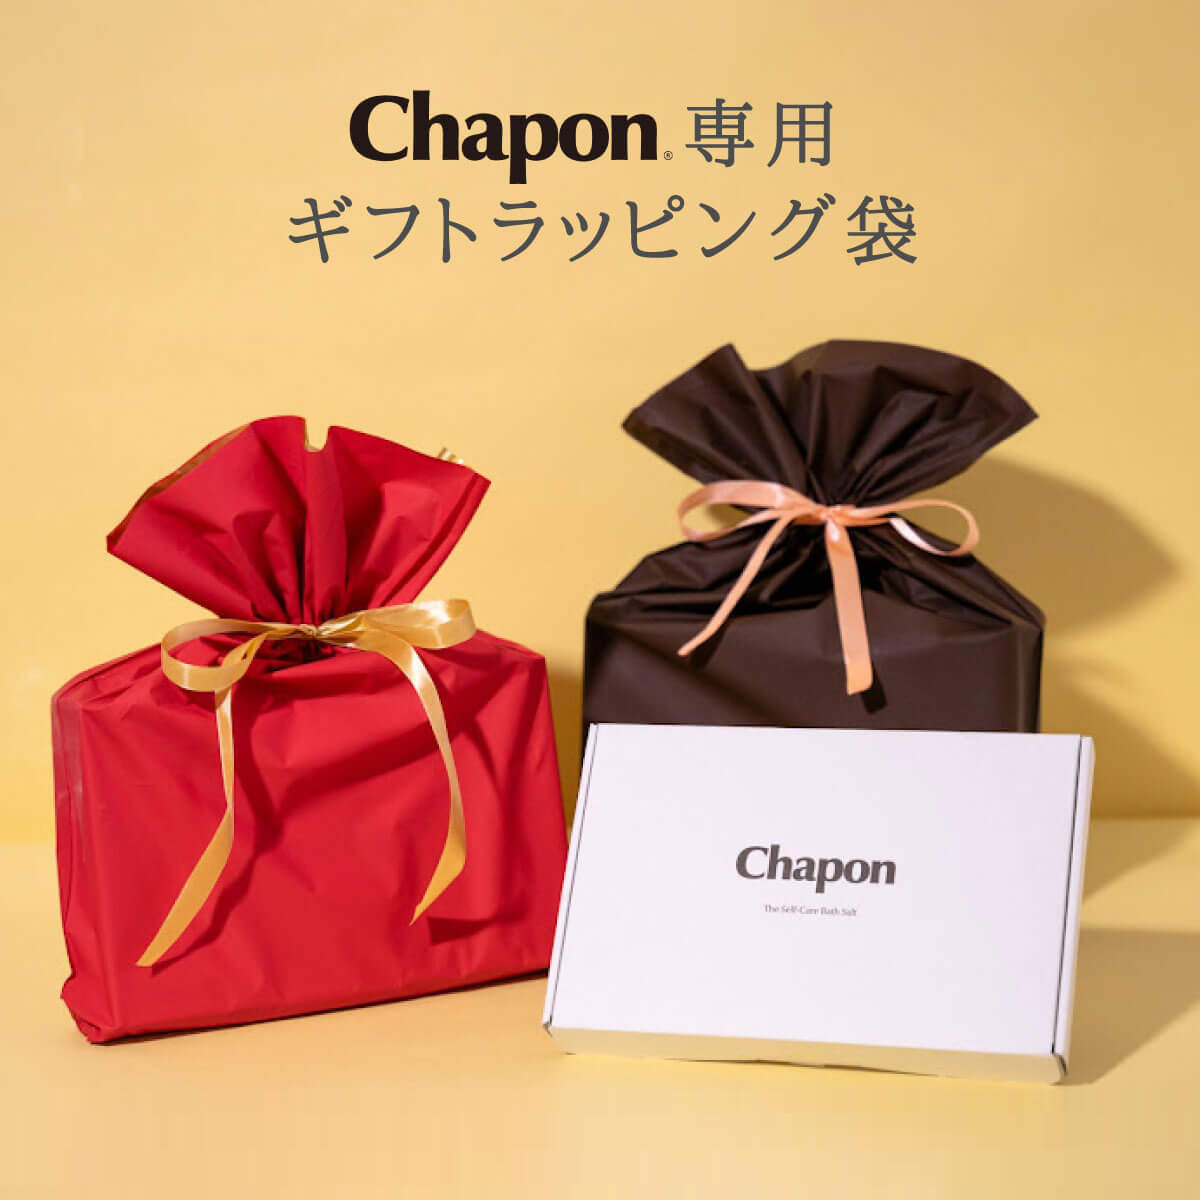 [Chapon специальный подарок упаковка пакет ] Chapon соль для ванны средство для ванн подарок в подарок рекомендация 